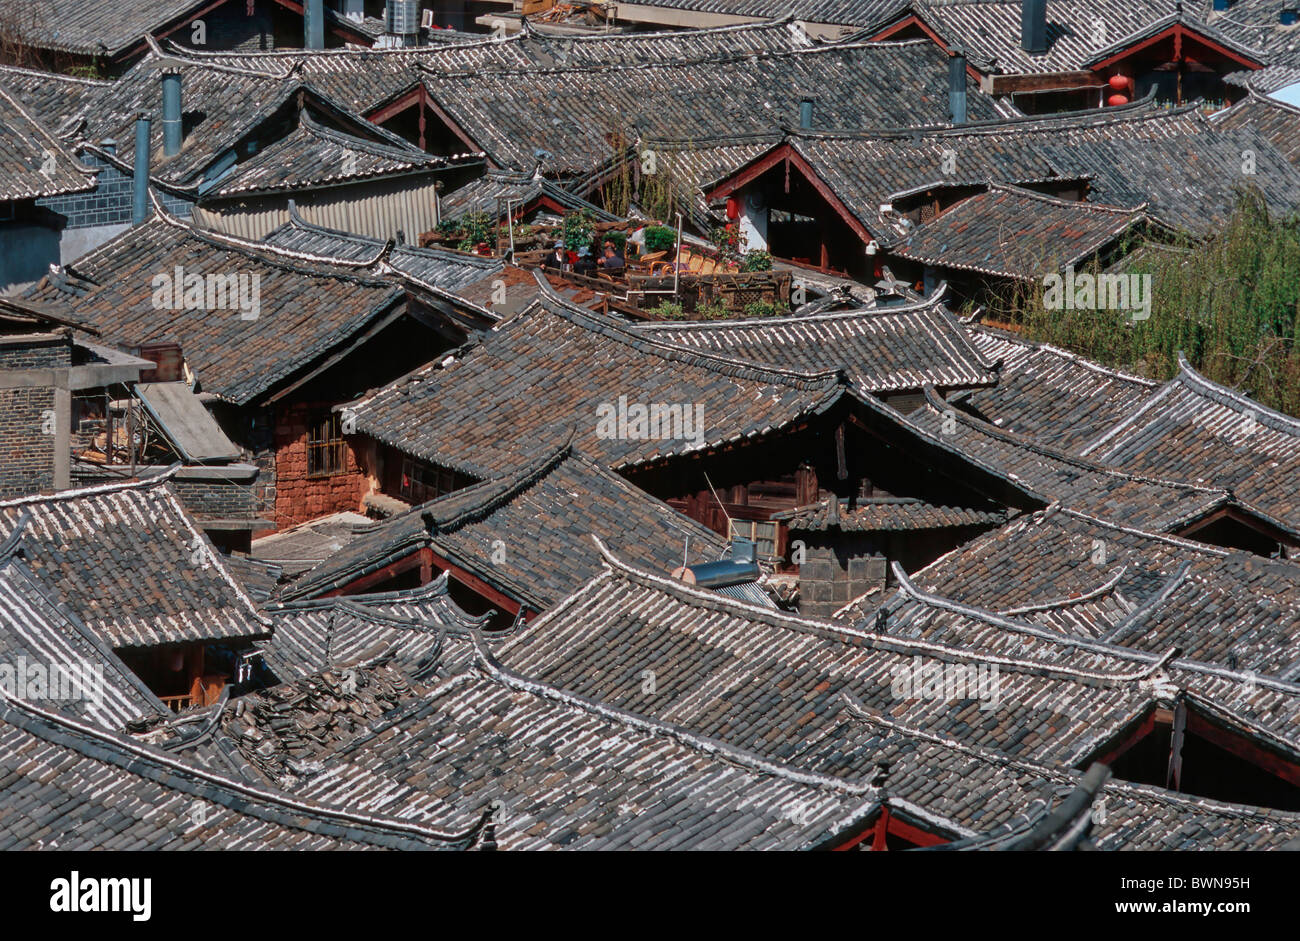 Asie Chine Lijiang Yunnan Province site du patrimoine mondial de l'vieille ville historique de la culture Naxi toits terrasse Banque D'Images